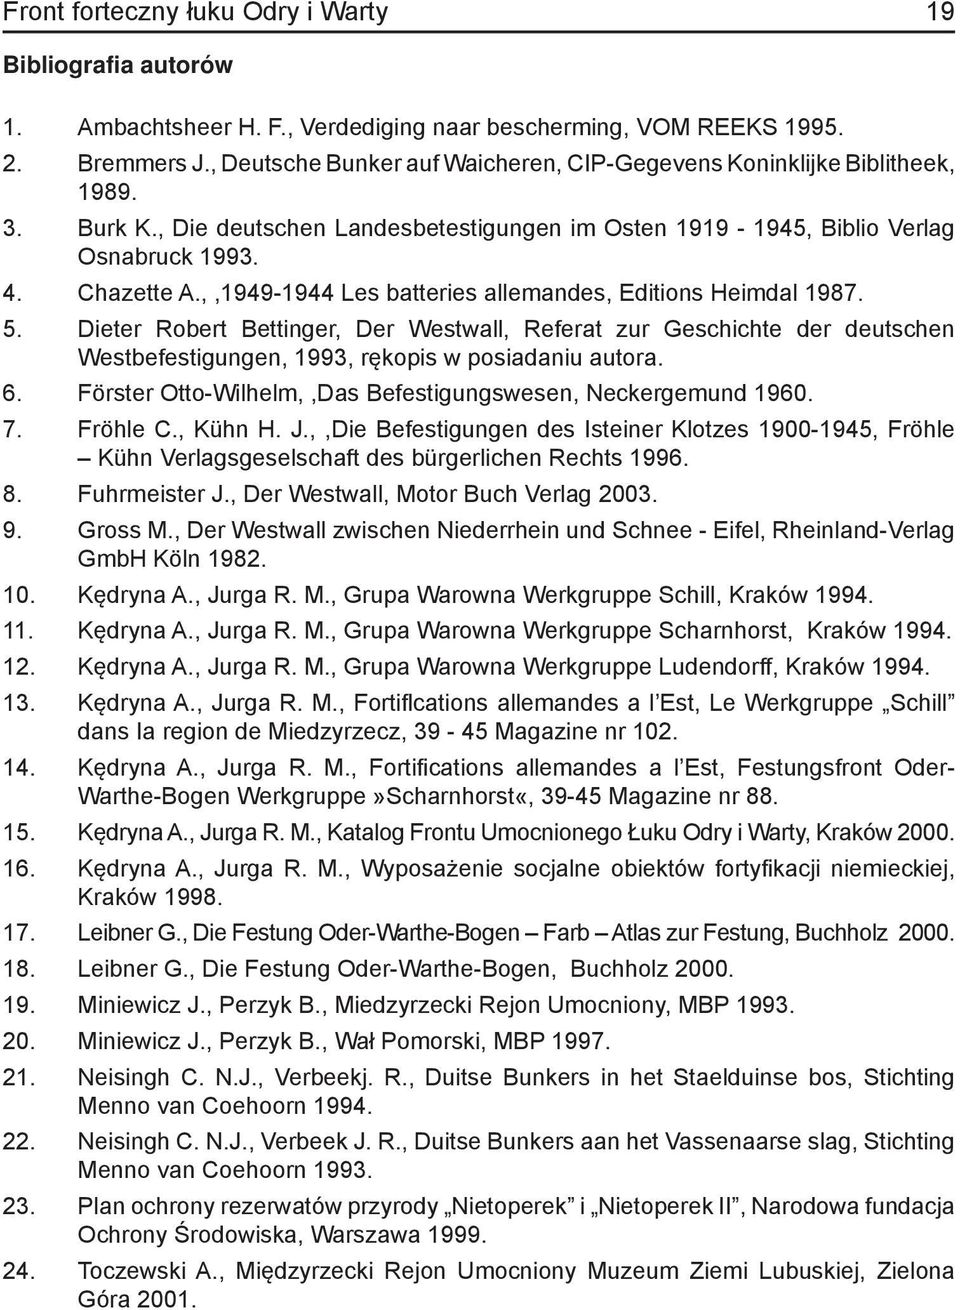 ,,1949-1944 Les batteries allemandes, Editions Heimdal 1987. 5. Dieter Robert Bettinger, Der Westwall, Referat zur Geschichte der deutschen Westbefestigungen, 1993, rękopis w posiadaniu autora. 6.